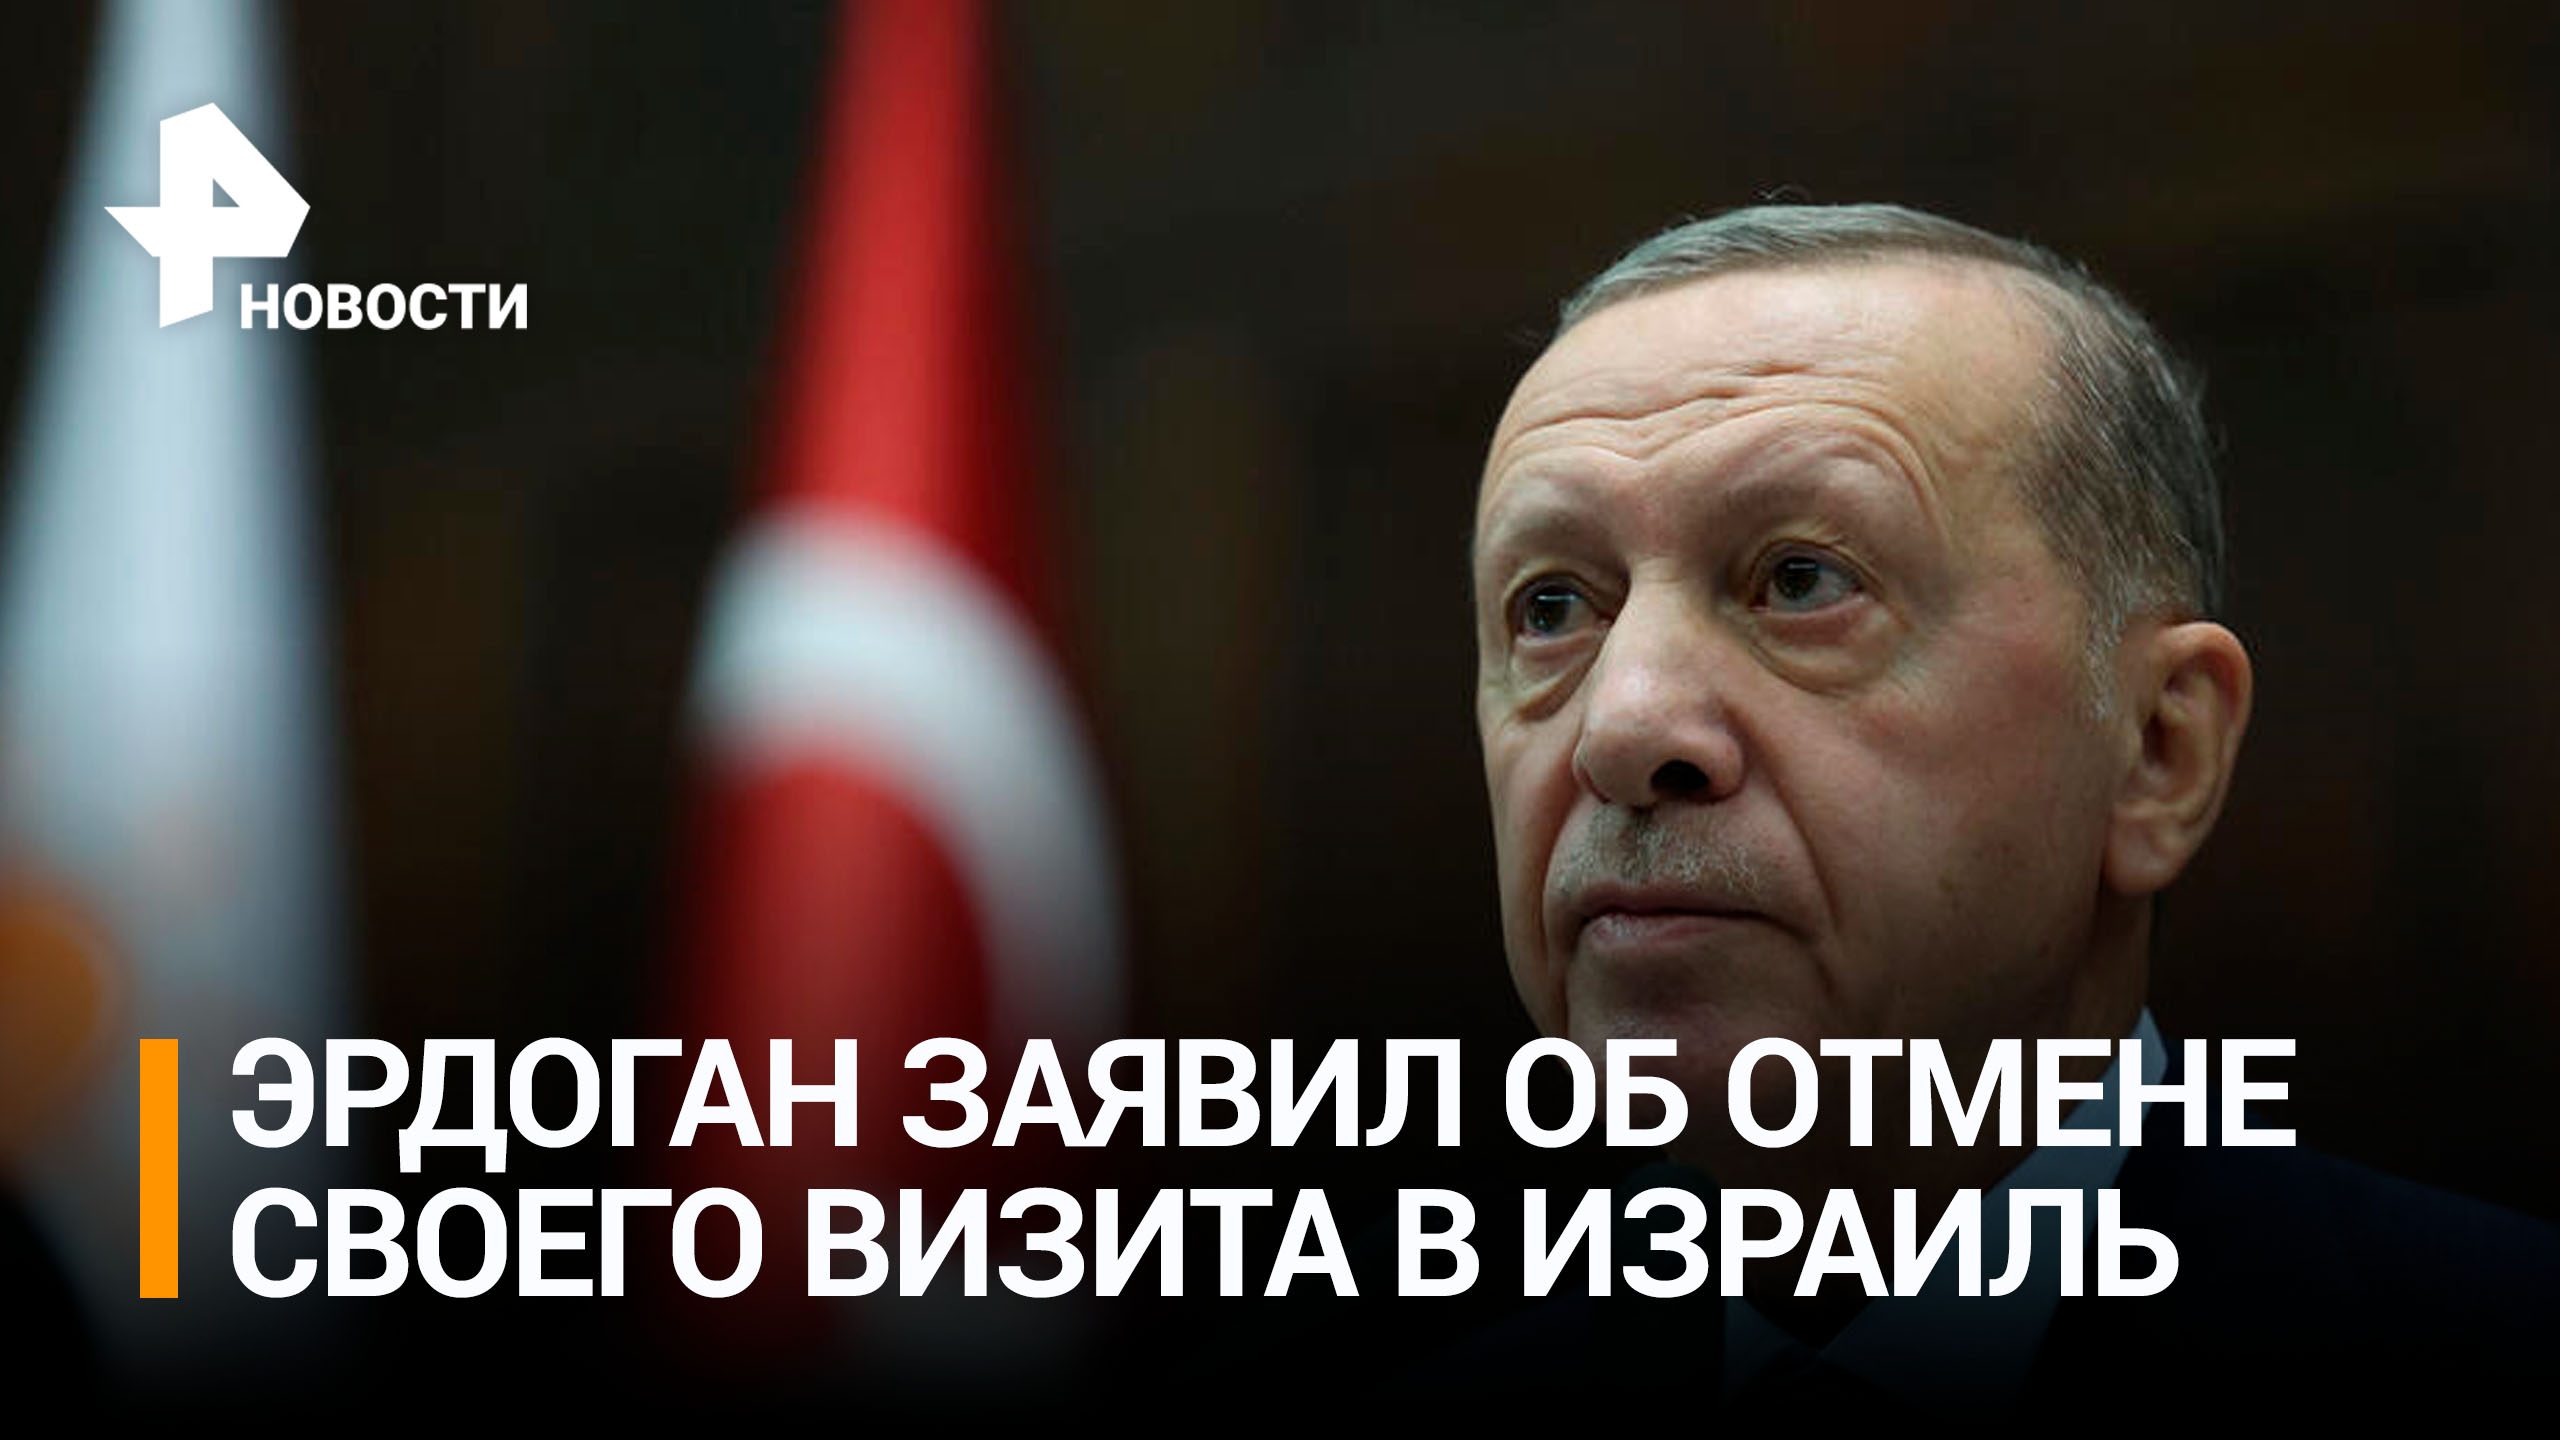 Эрдоган отменил визиты в Израиль всех официальных лиц Турции / РЕН Новости